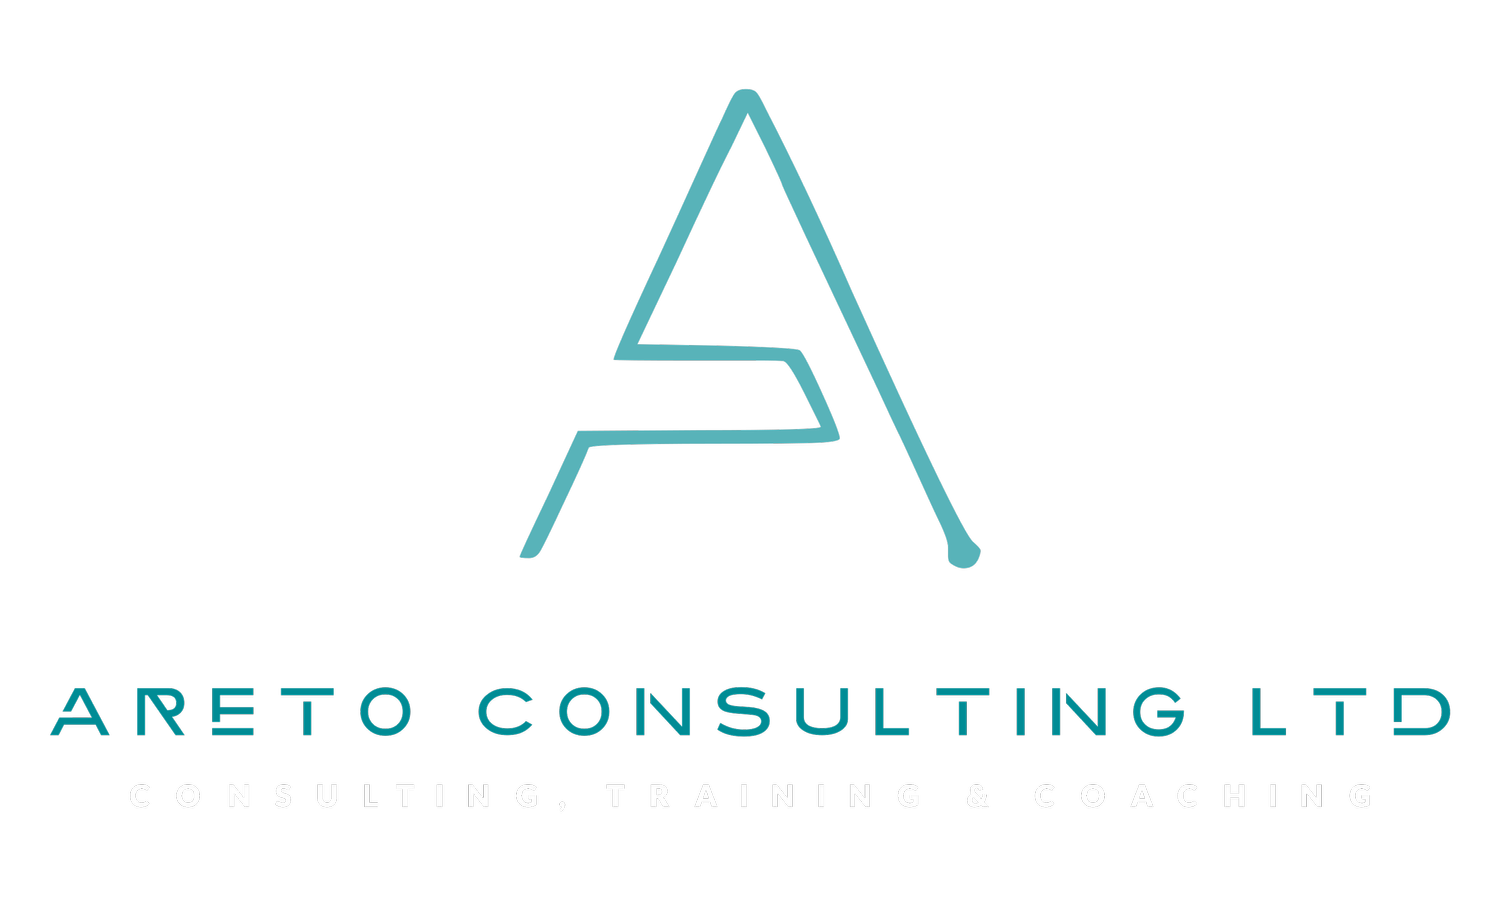 Areto Consulting Ltd